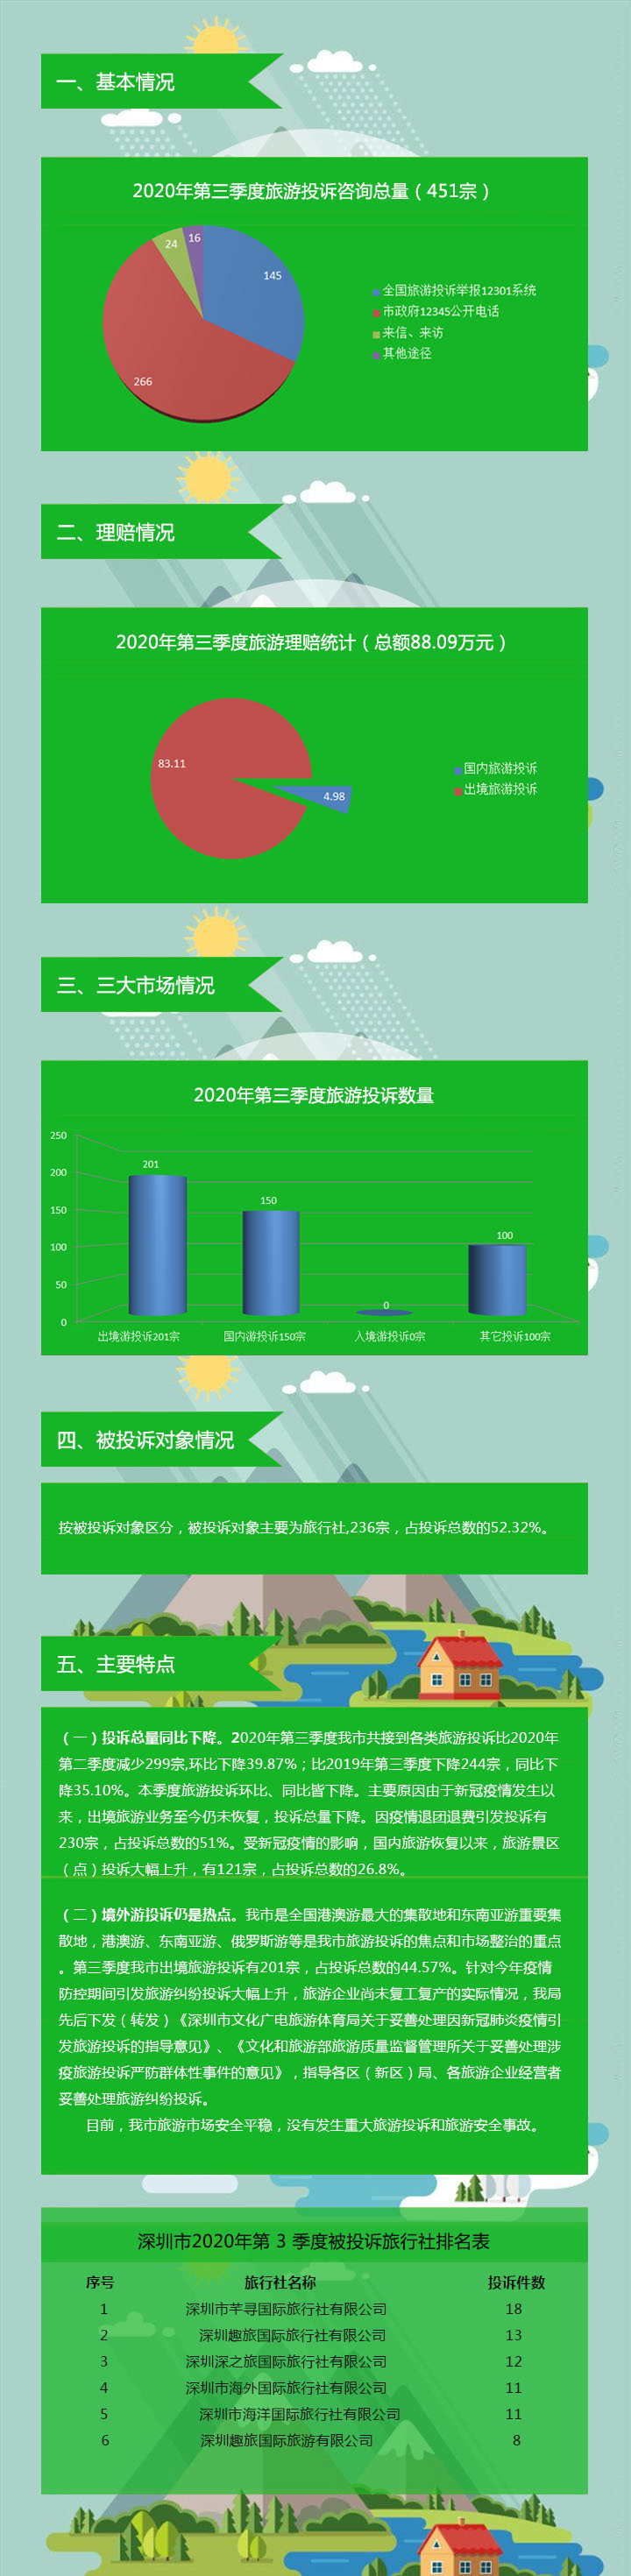 深圳市旅游监管简报（2020年第三季度）